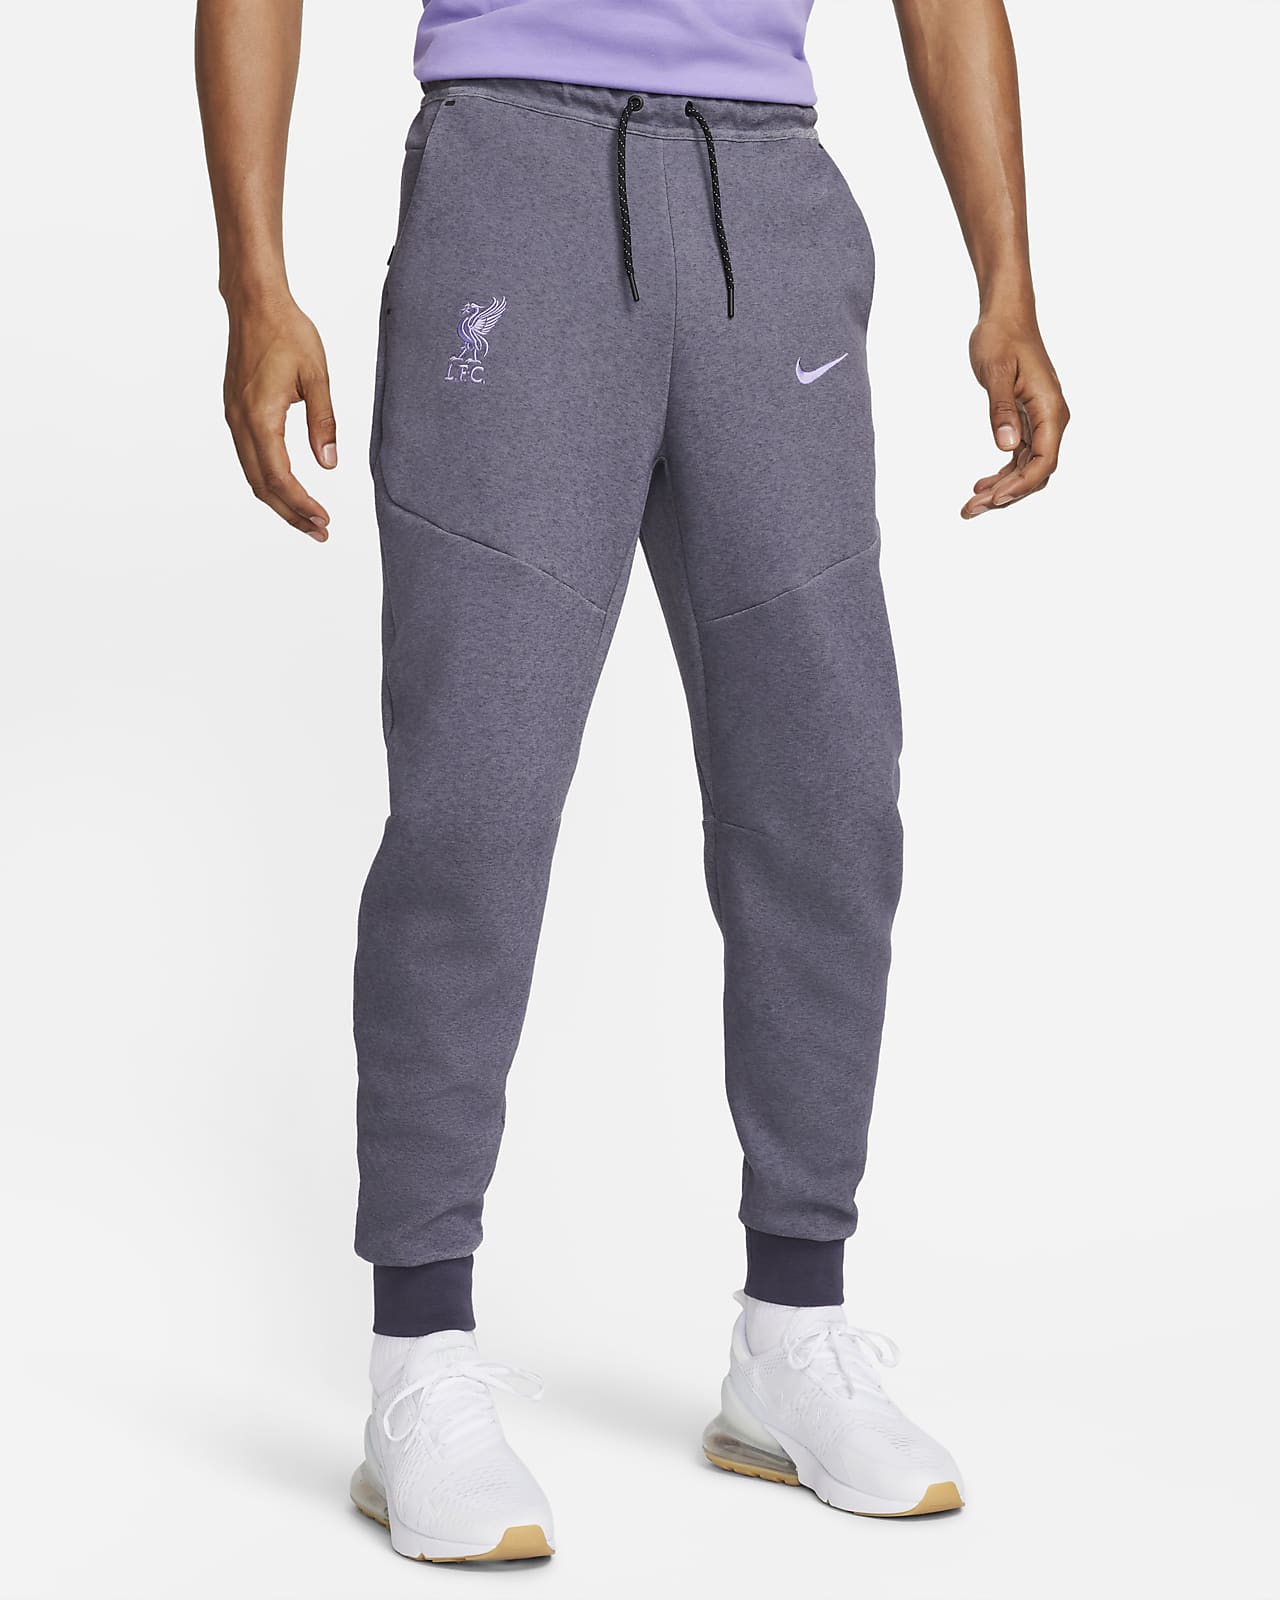 Pantalons de Jogging Nike Gris pour Homme